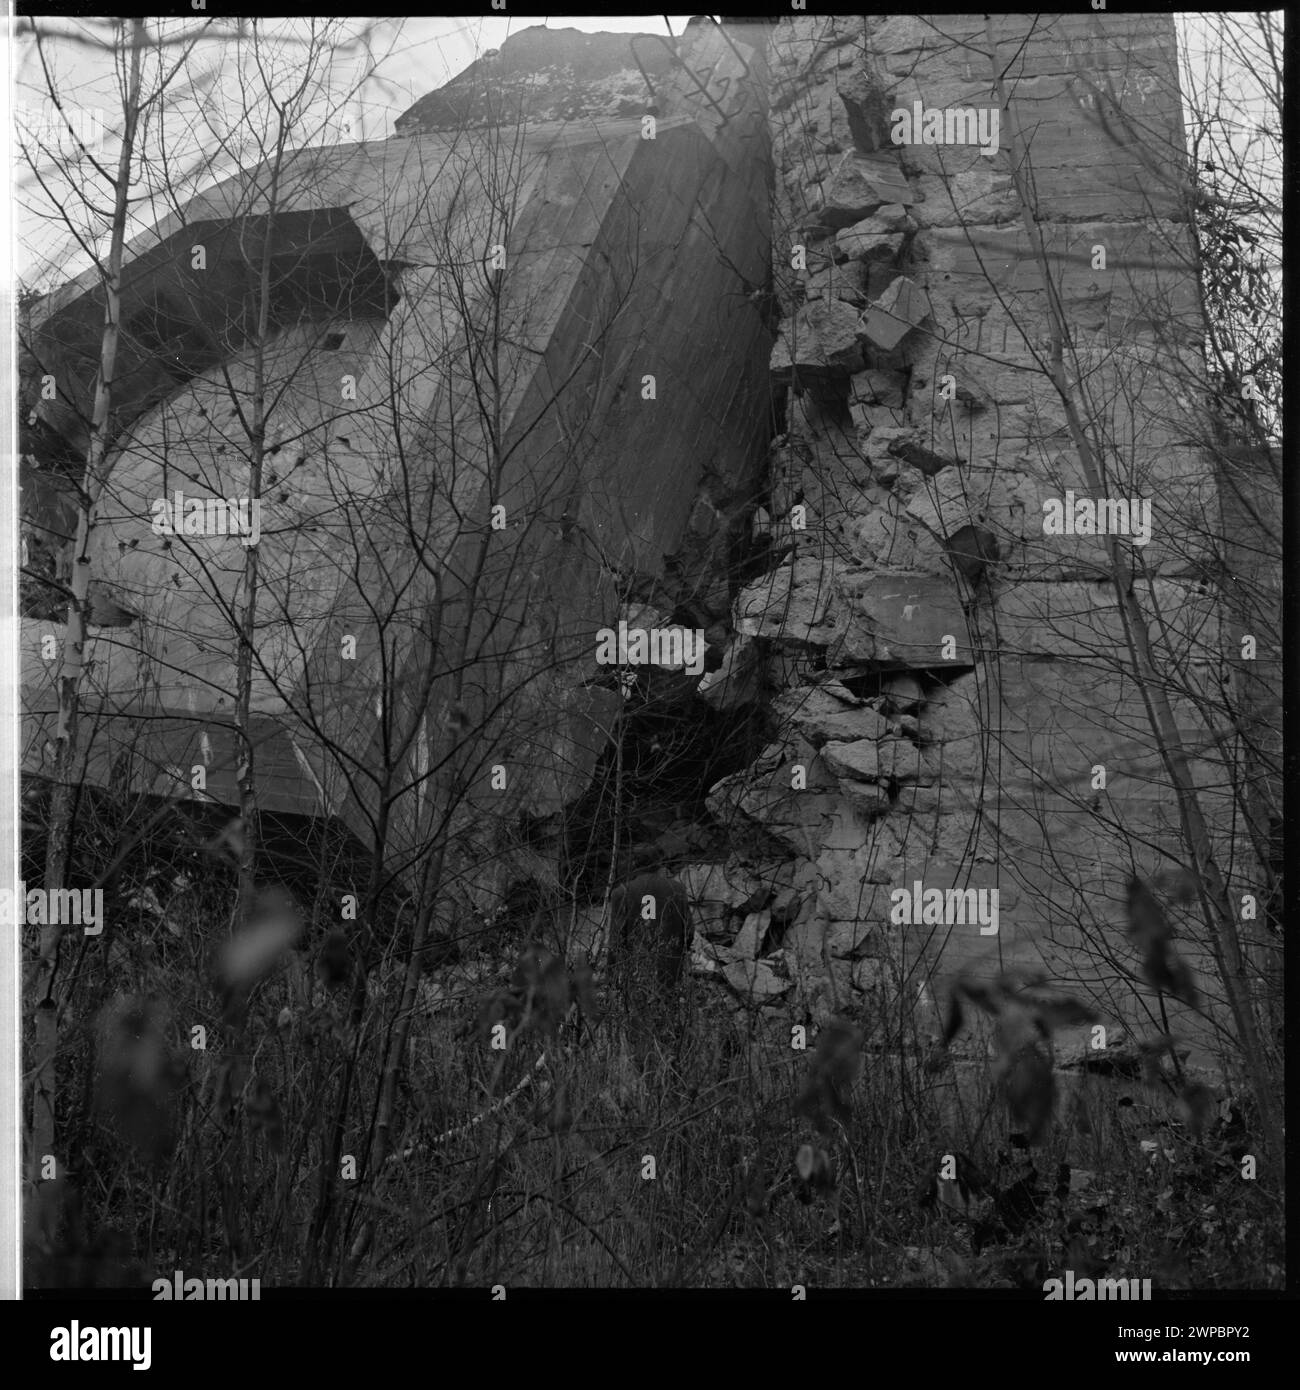 Das Gebiet von "Wolfsform", dem Leiter des Hauptquartiers Adolf Hitlers - der Rest eines Bunkers; von einer Fotoserie zu dem artikel von Miroszek Azembski "auf dem Feld" Mierci Erntefeld "," Wiatr '1953, Nr. 49, S. 20; Pra 1953 (1953-00-00-1953-00); Stockfoto